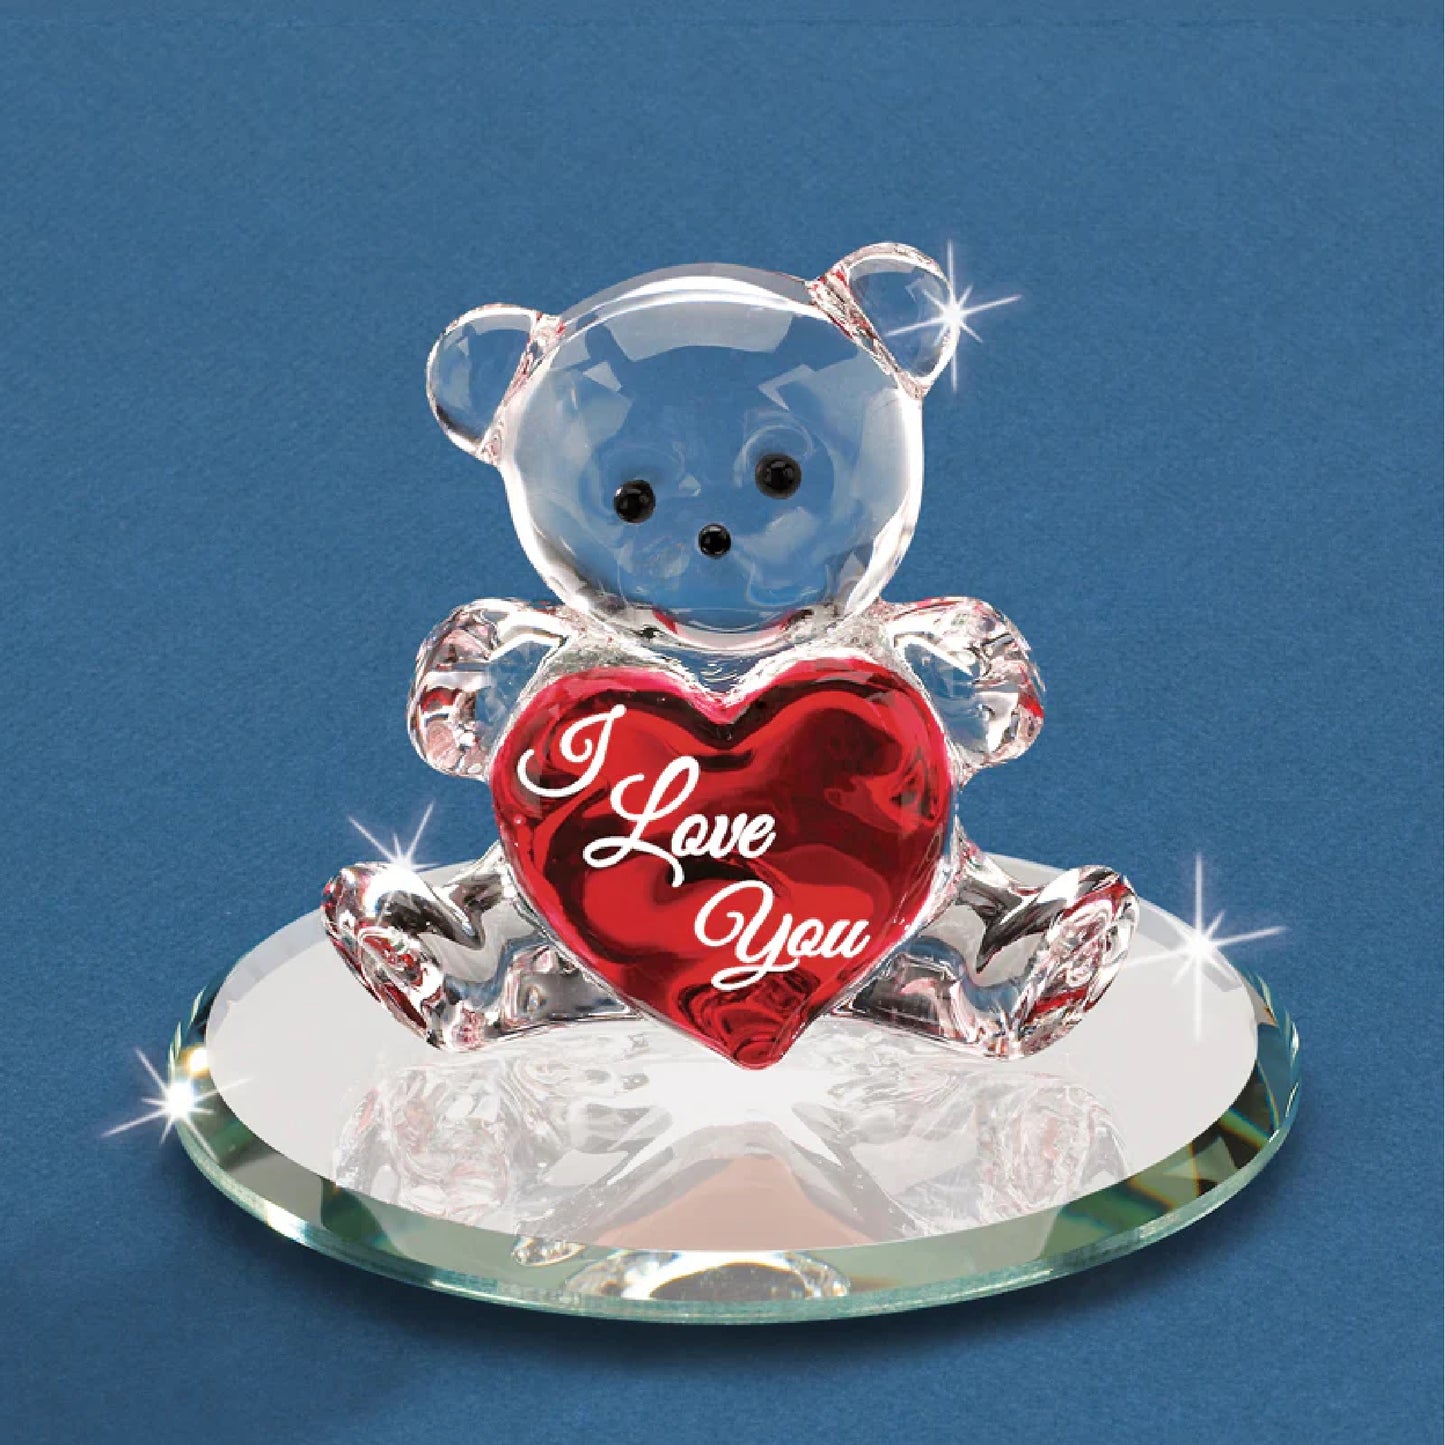 Glass Baron Bear "I Love You" Bear with Heart Figure